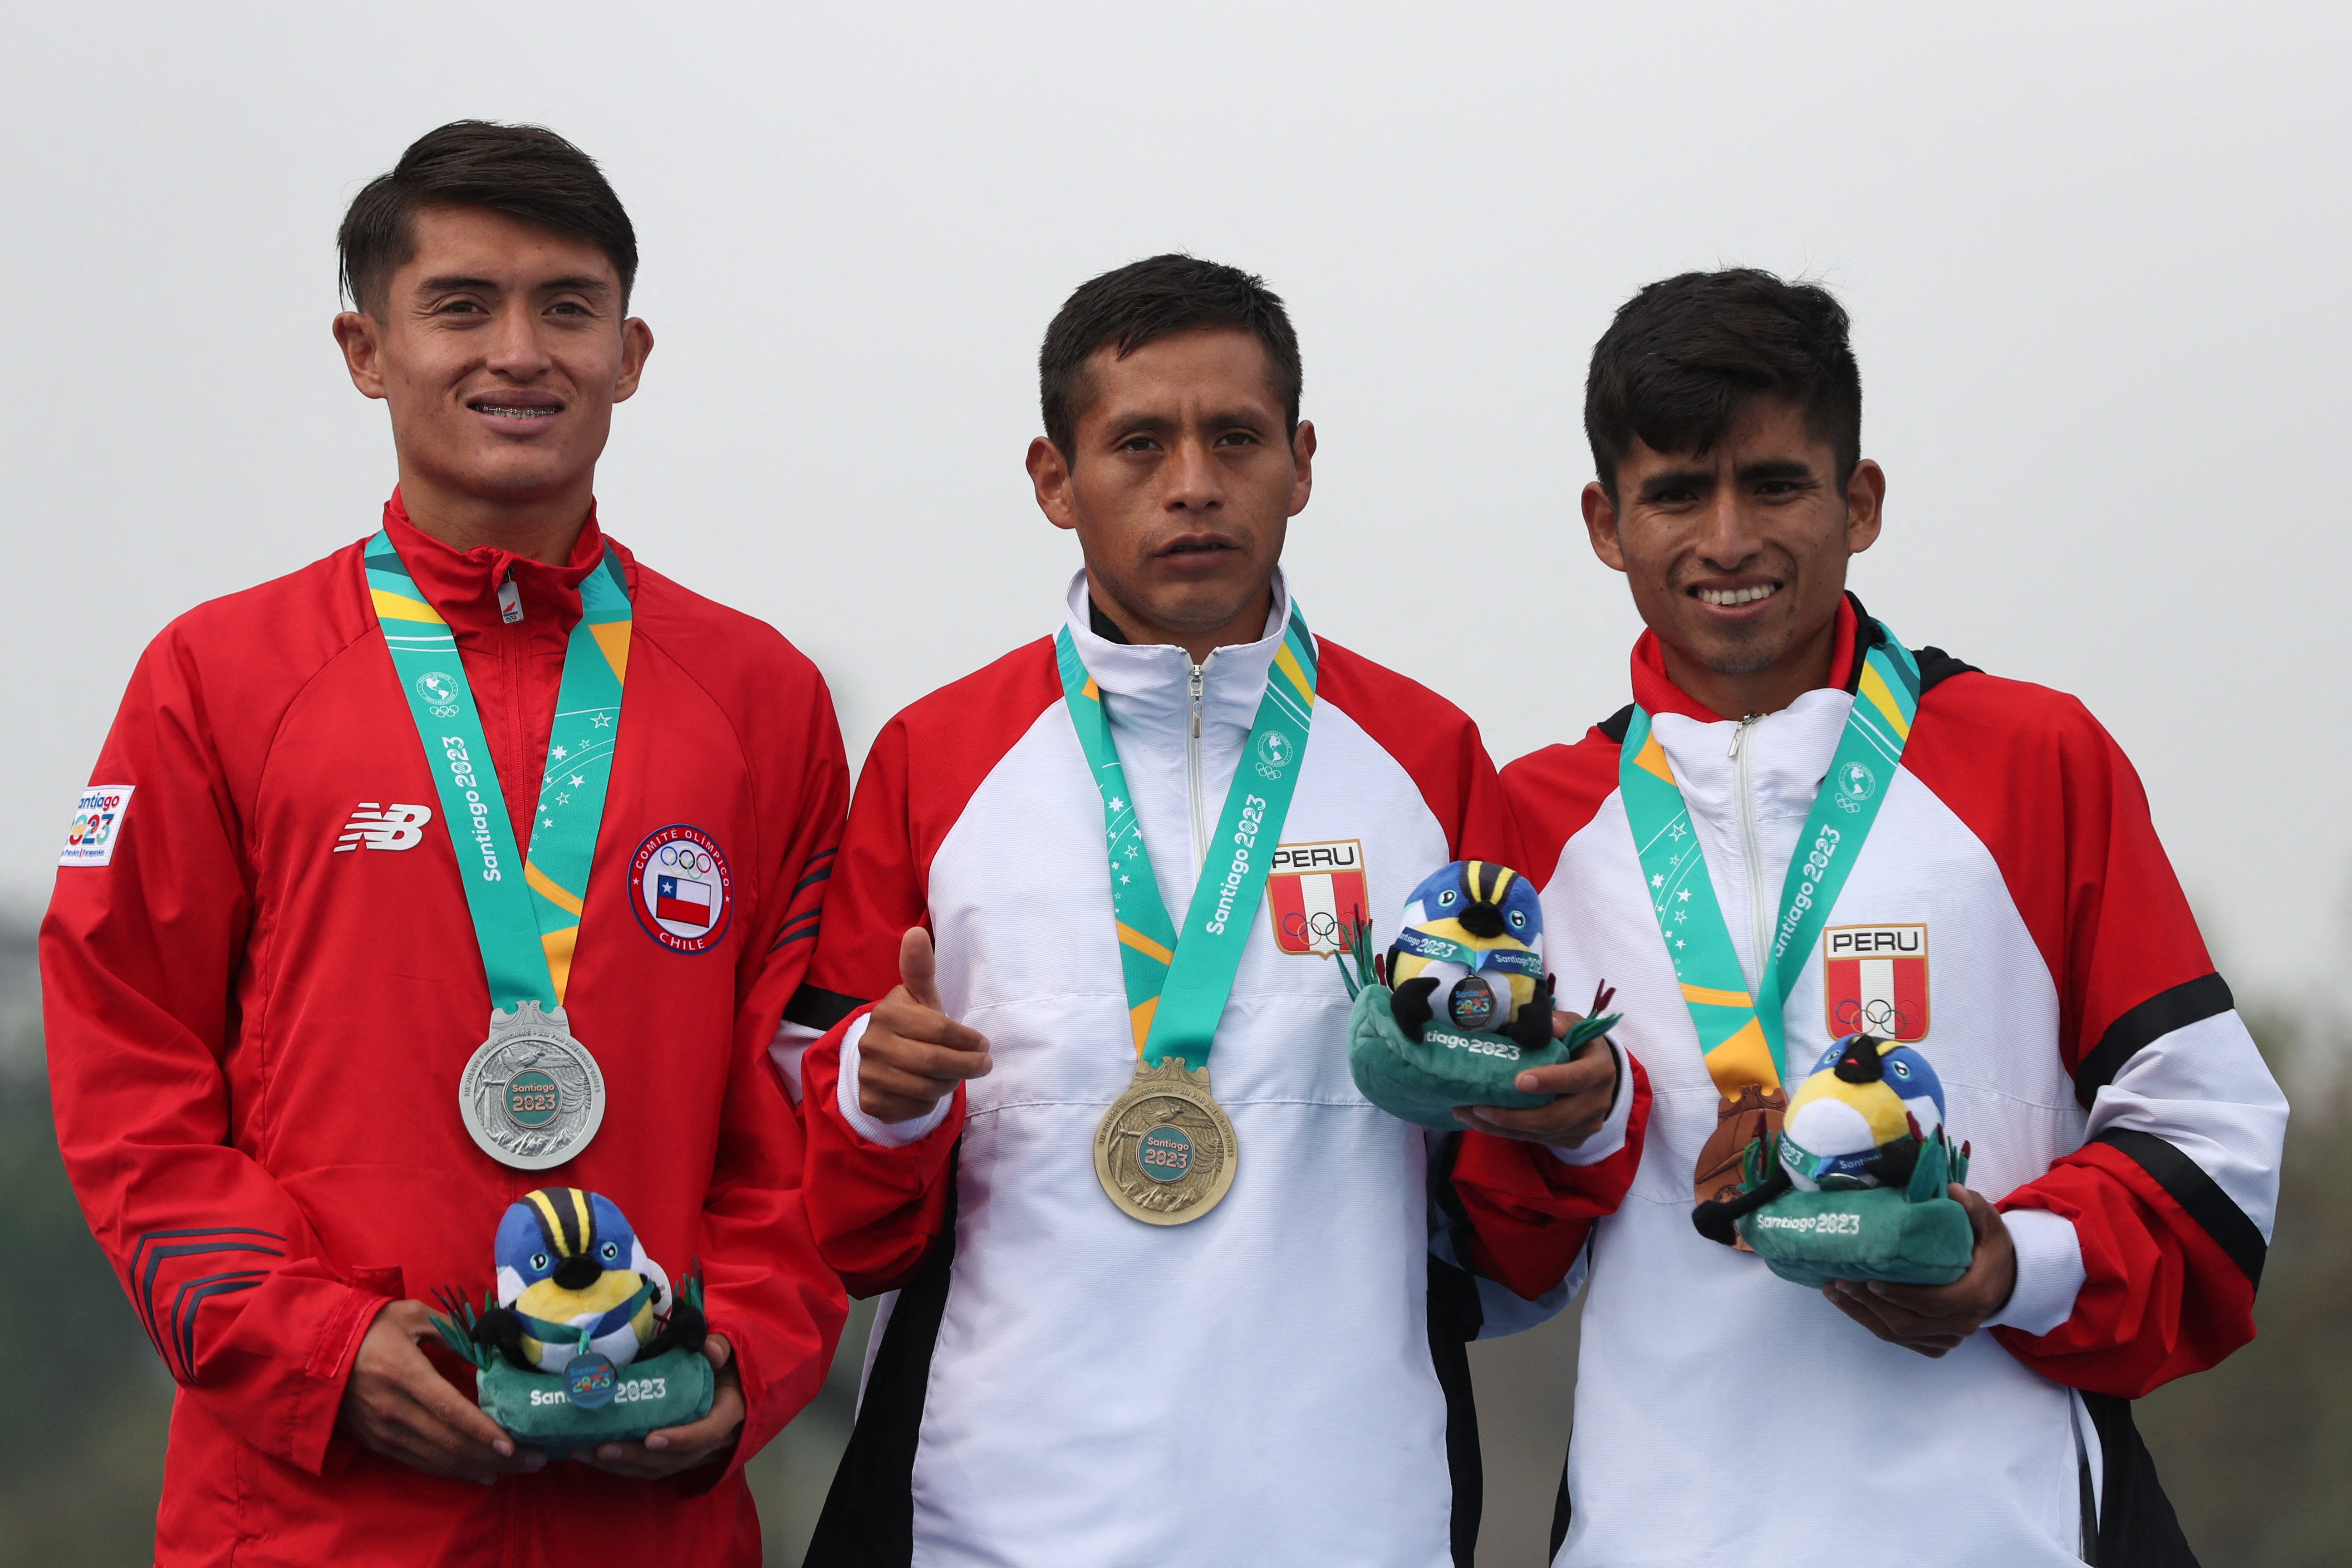 Santiago 2023 Pan American Games Winner: Celebrating Victory